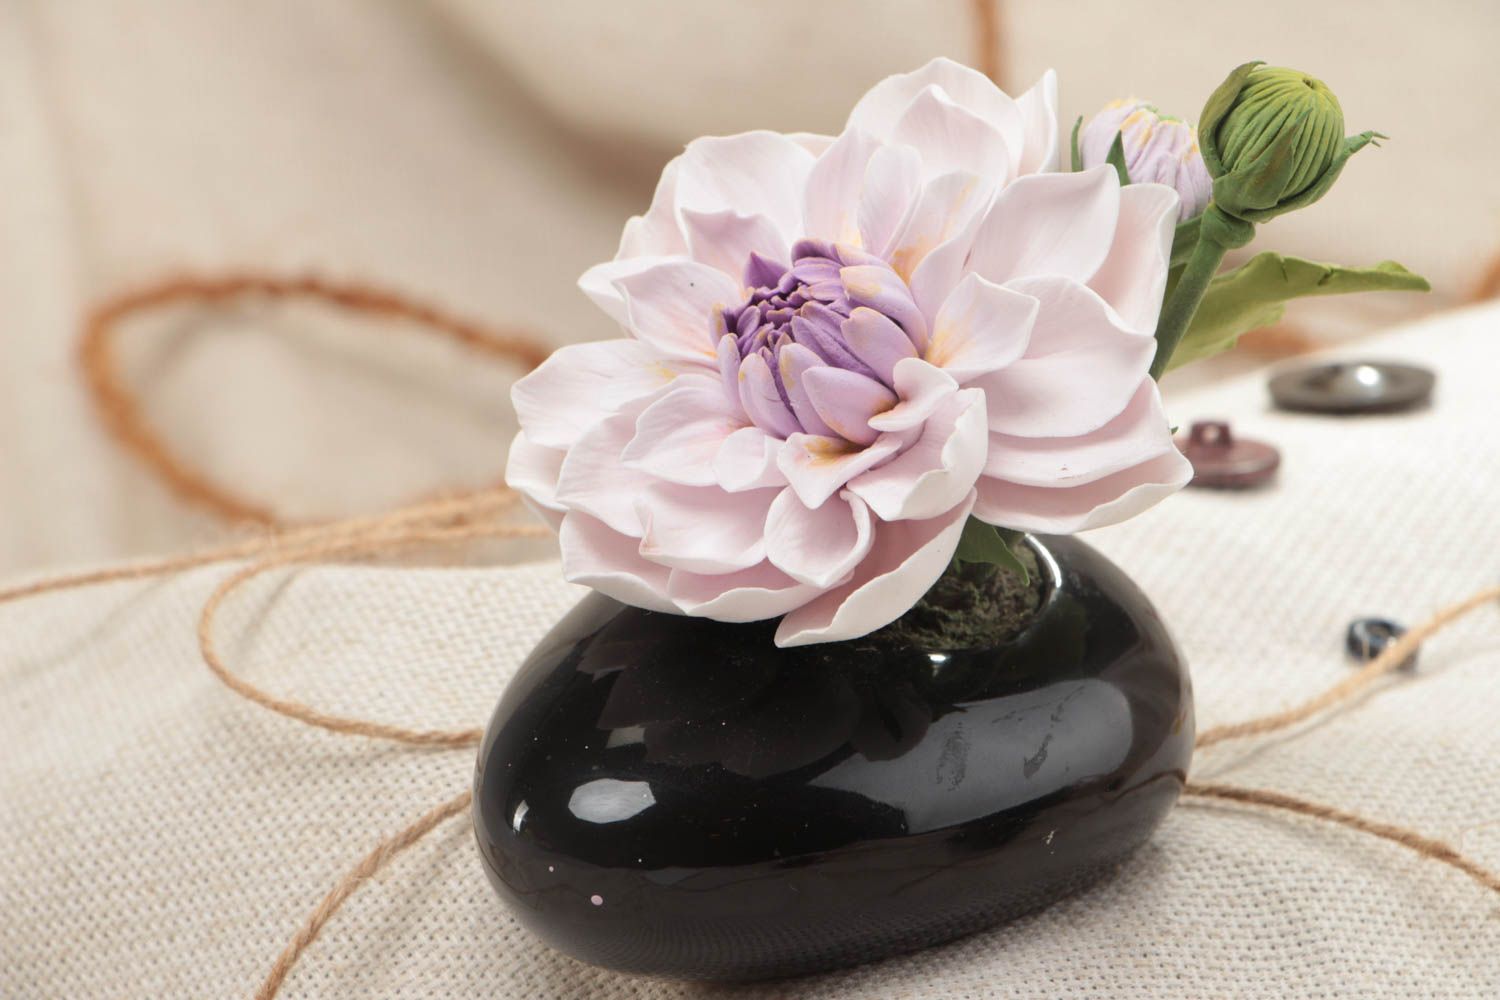 Handmade decorative polymer clay flower for interior design Dahlia photo 1